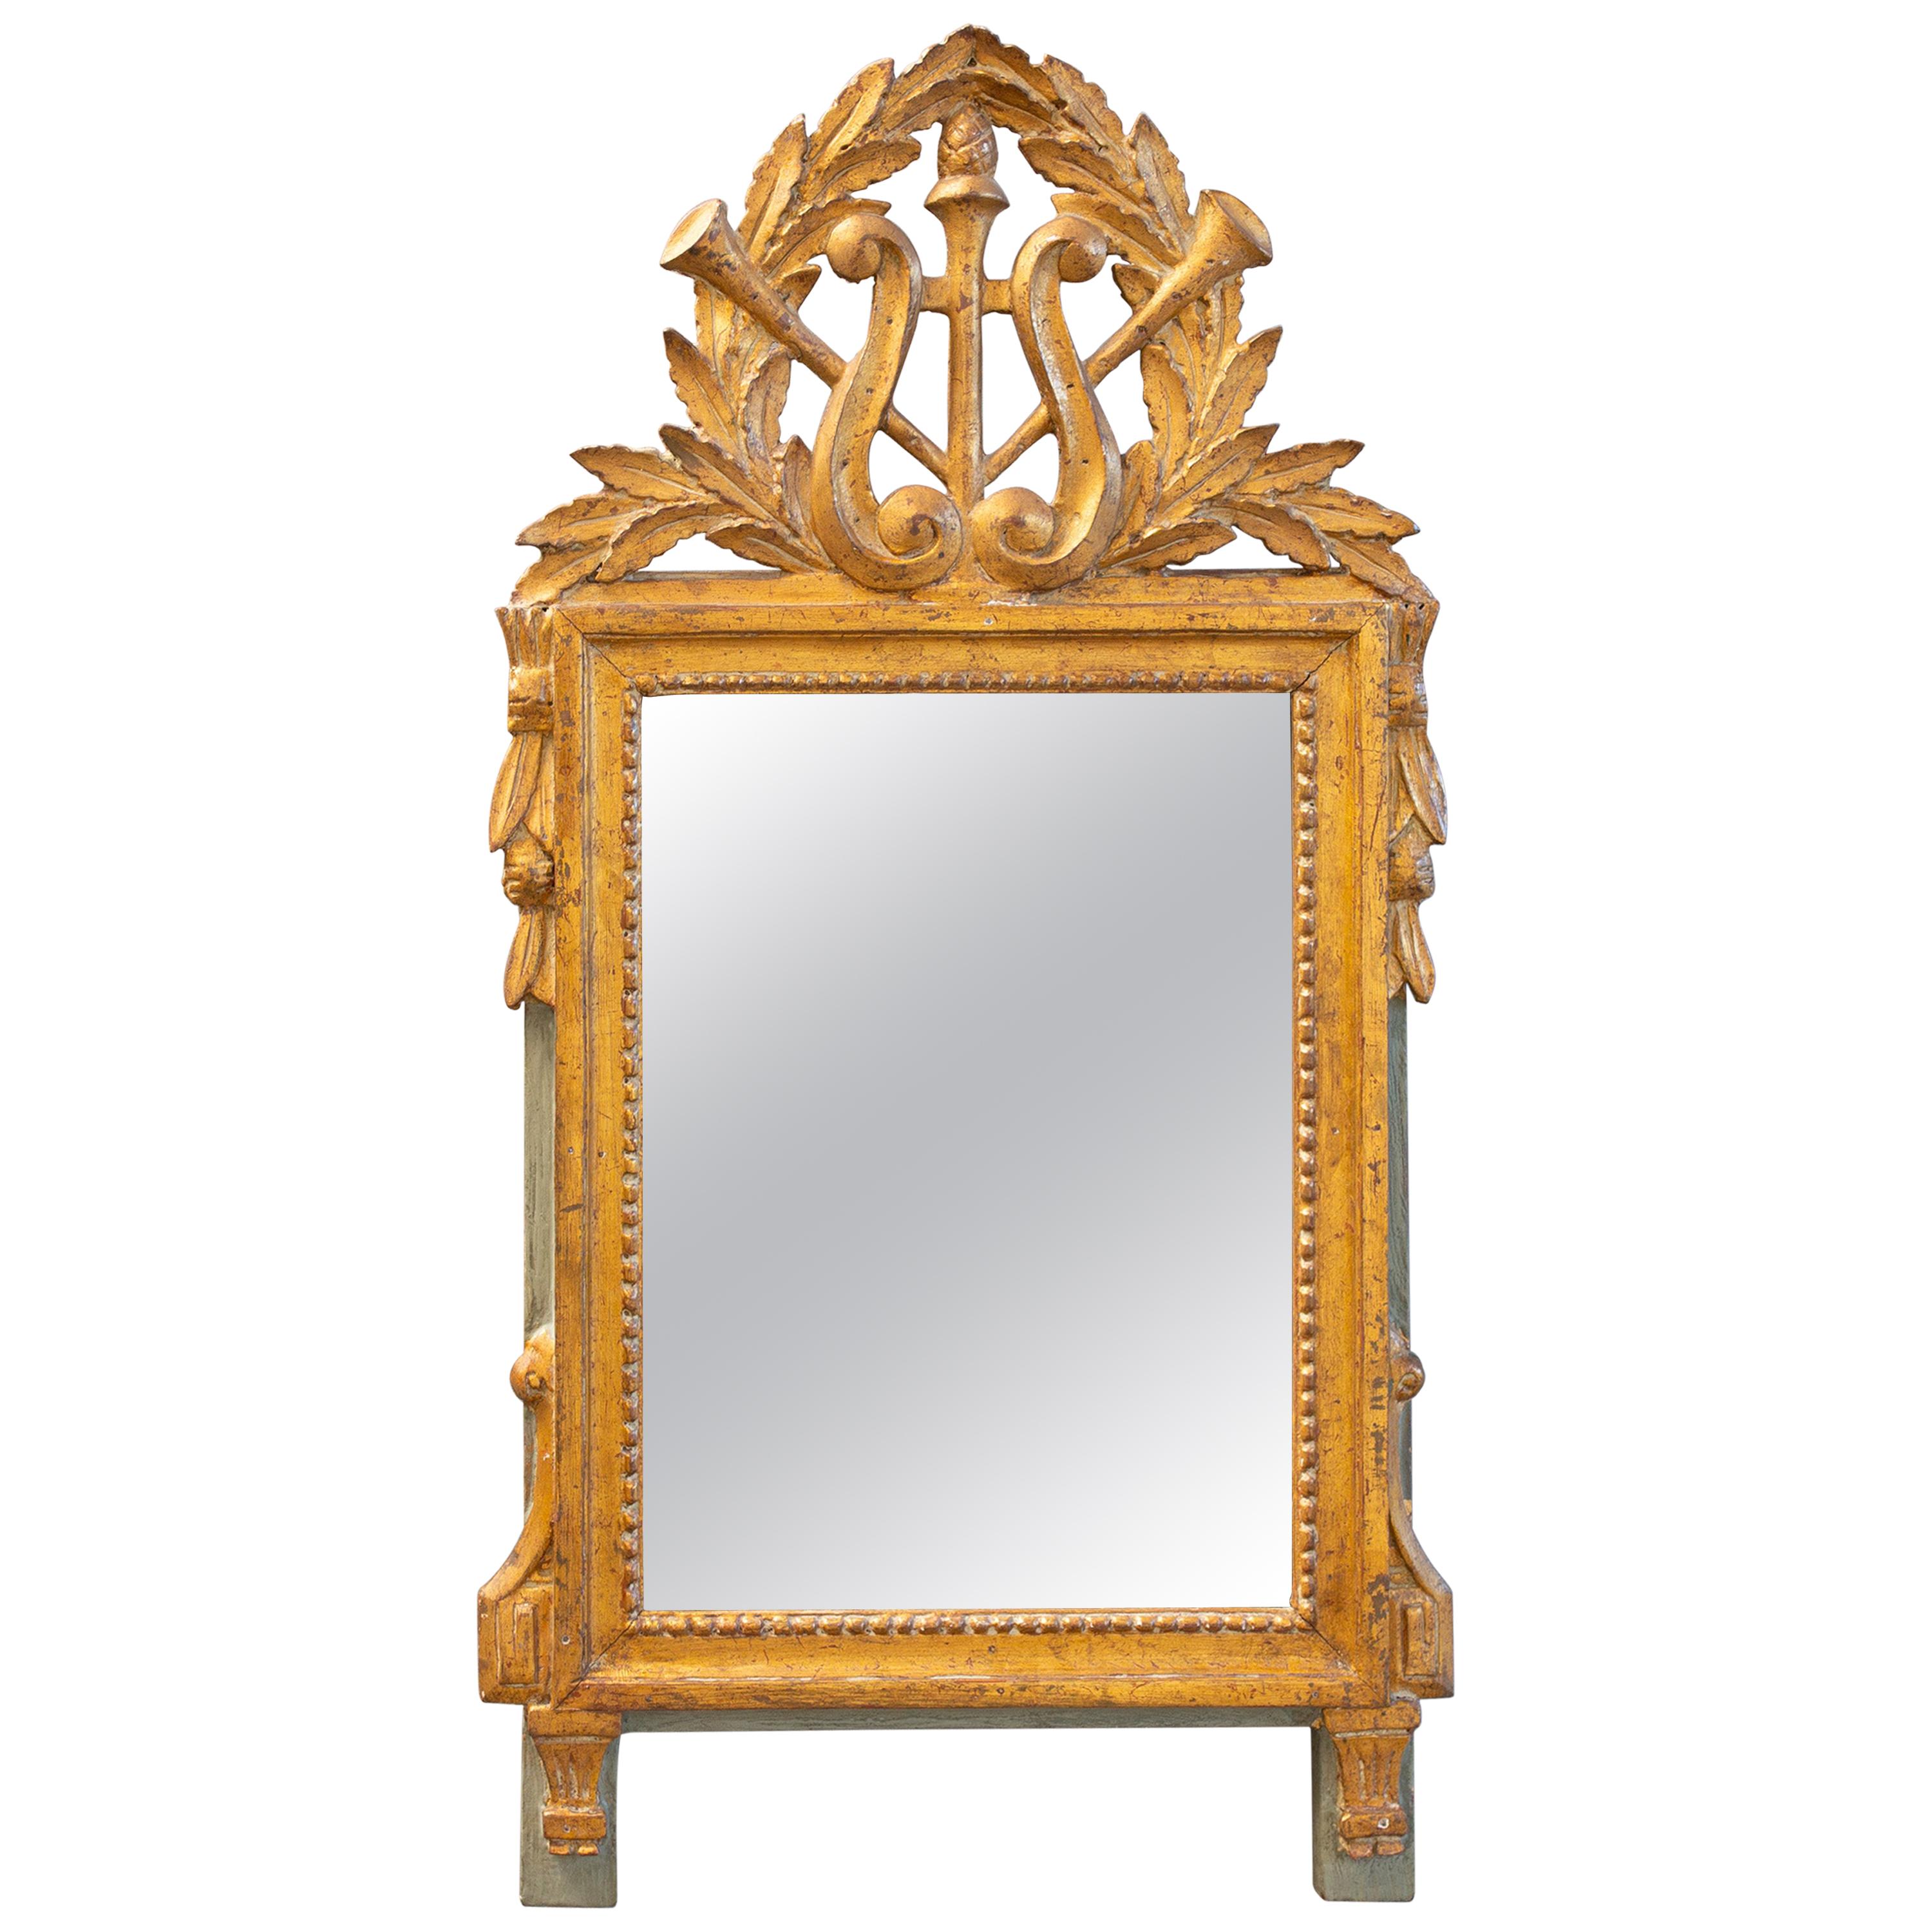 Vergoldeter französischer Spiegel aus dem späten 18